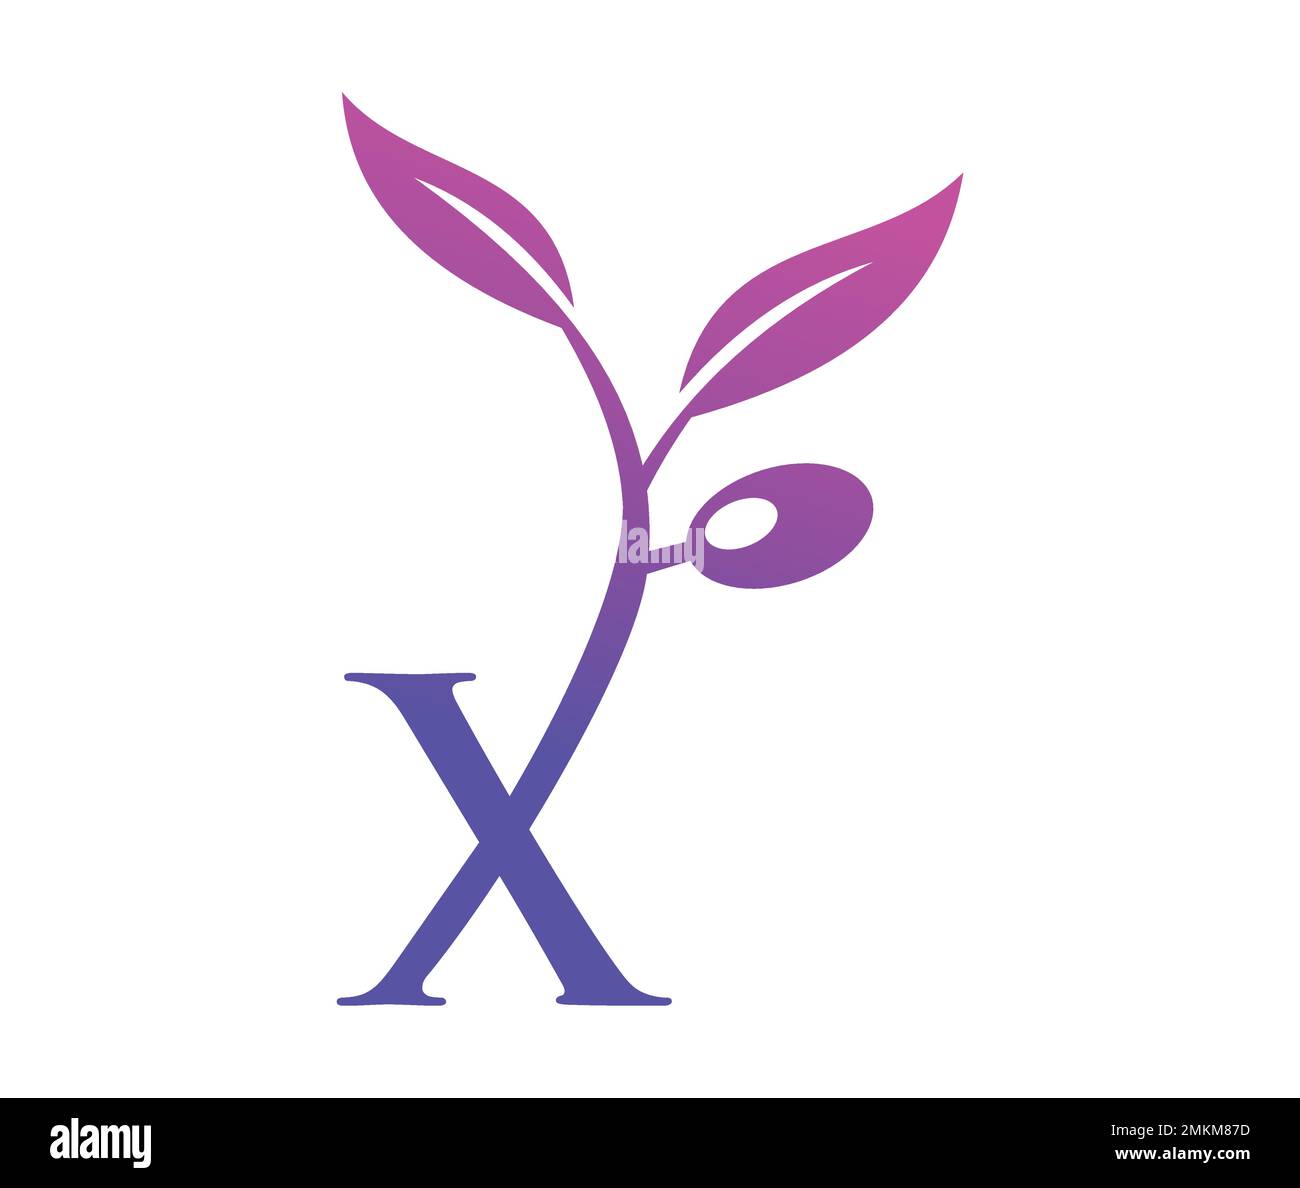 Illustrazione vettoriale del monogramma vite uva Logo lettera X Illustrazione Vettoriale